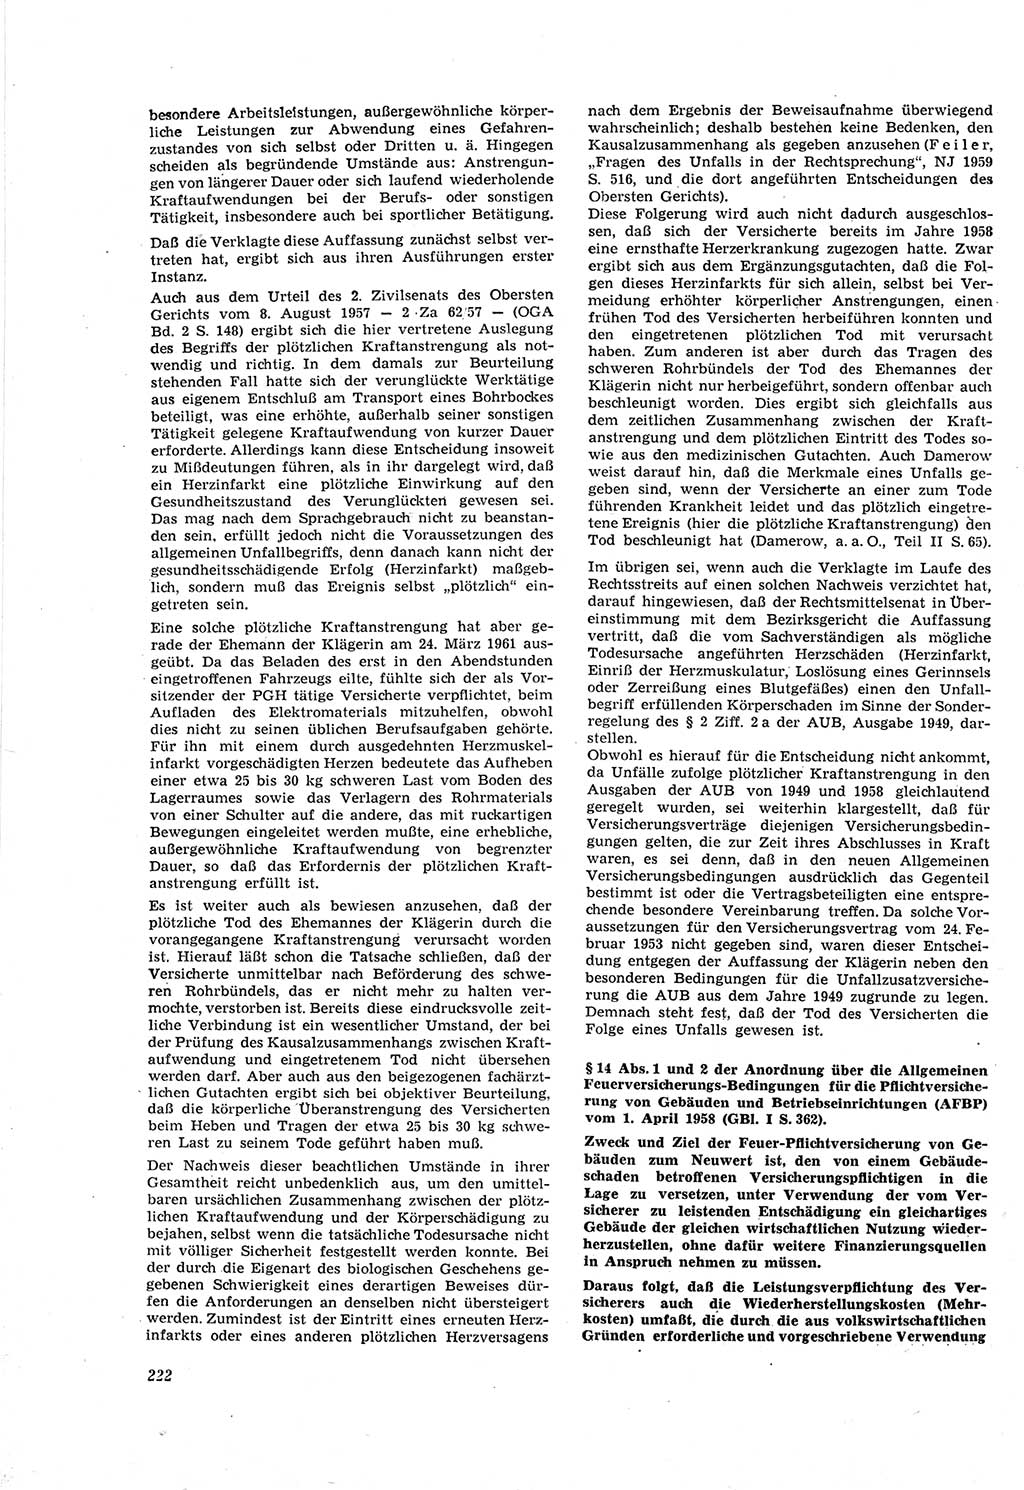 Neue Justiz (NJ), Zeitschrift für Recht und Rechtswissenschaft [Deutsche Demokratische Republik (DDR)], 18. Jahrgang 1964, Seite 222 (NJ DDR 1964, S. 222)